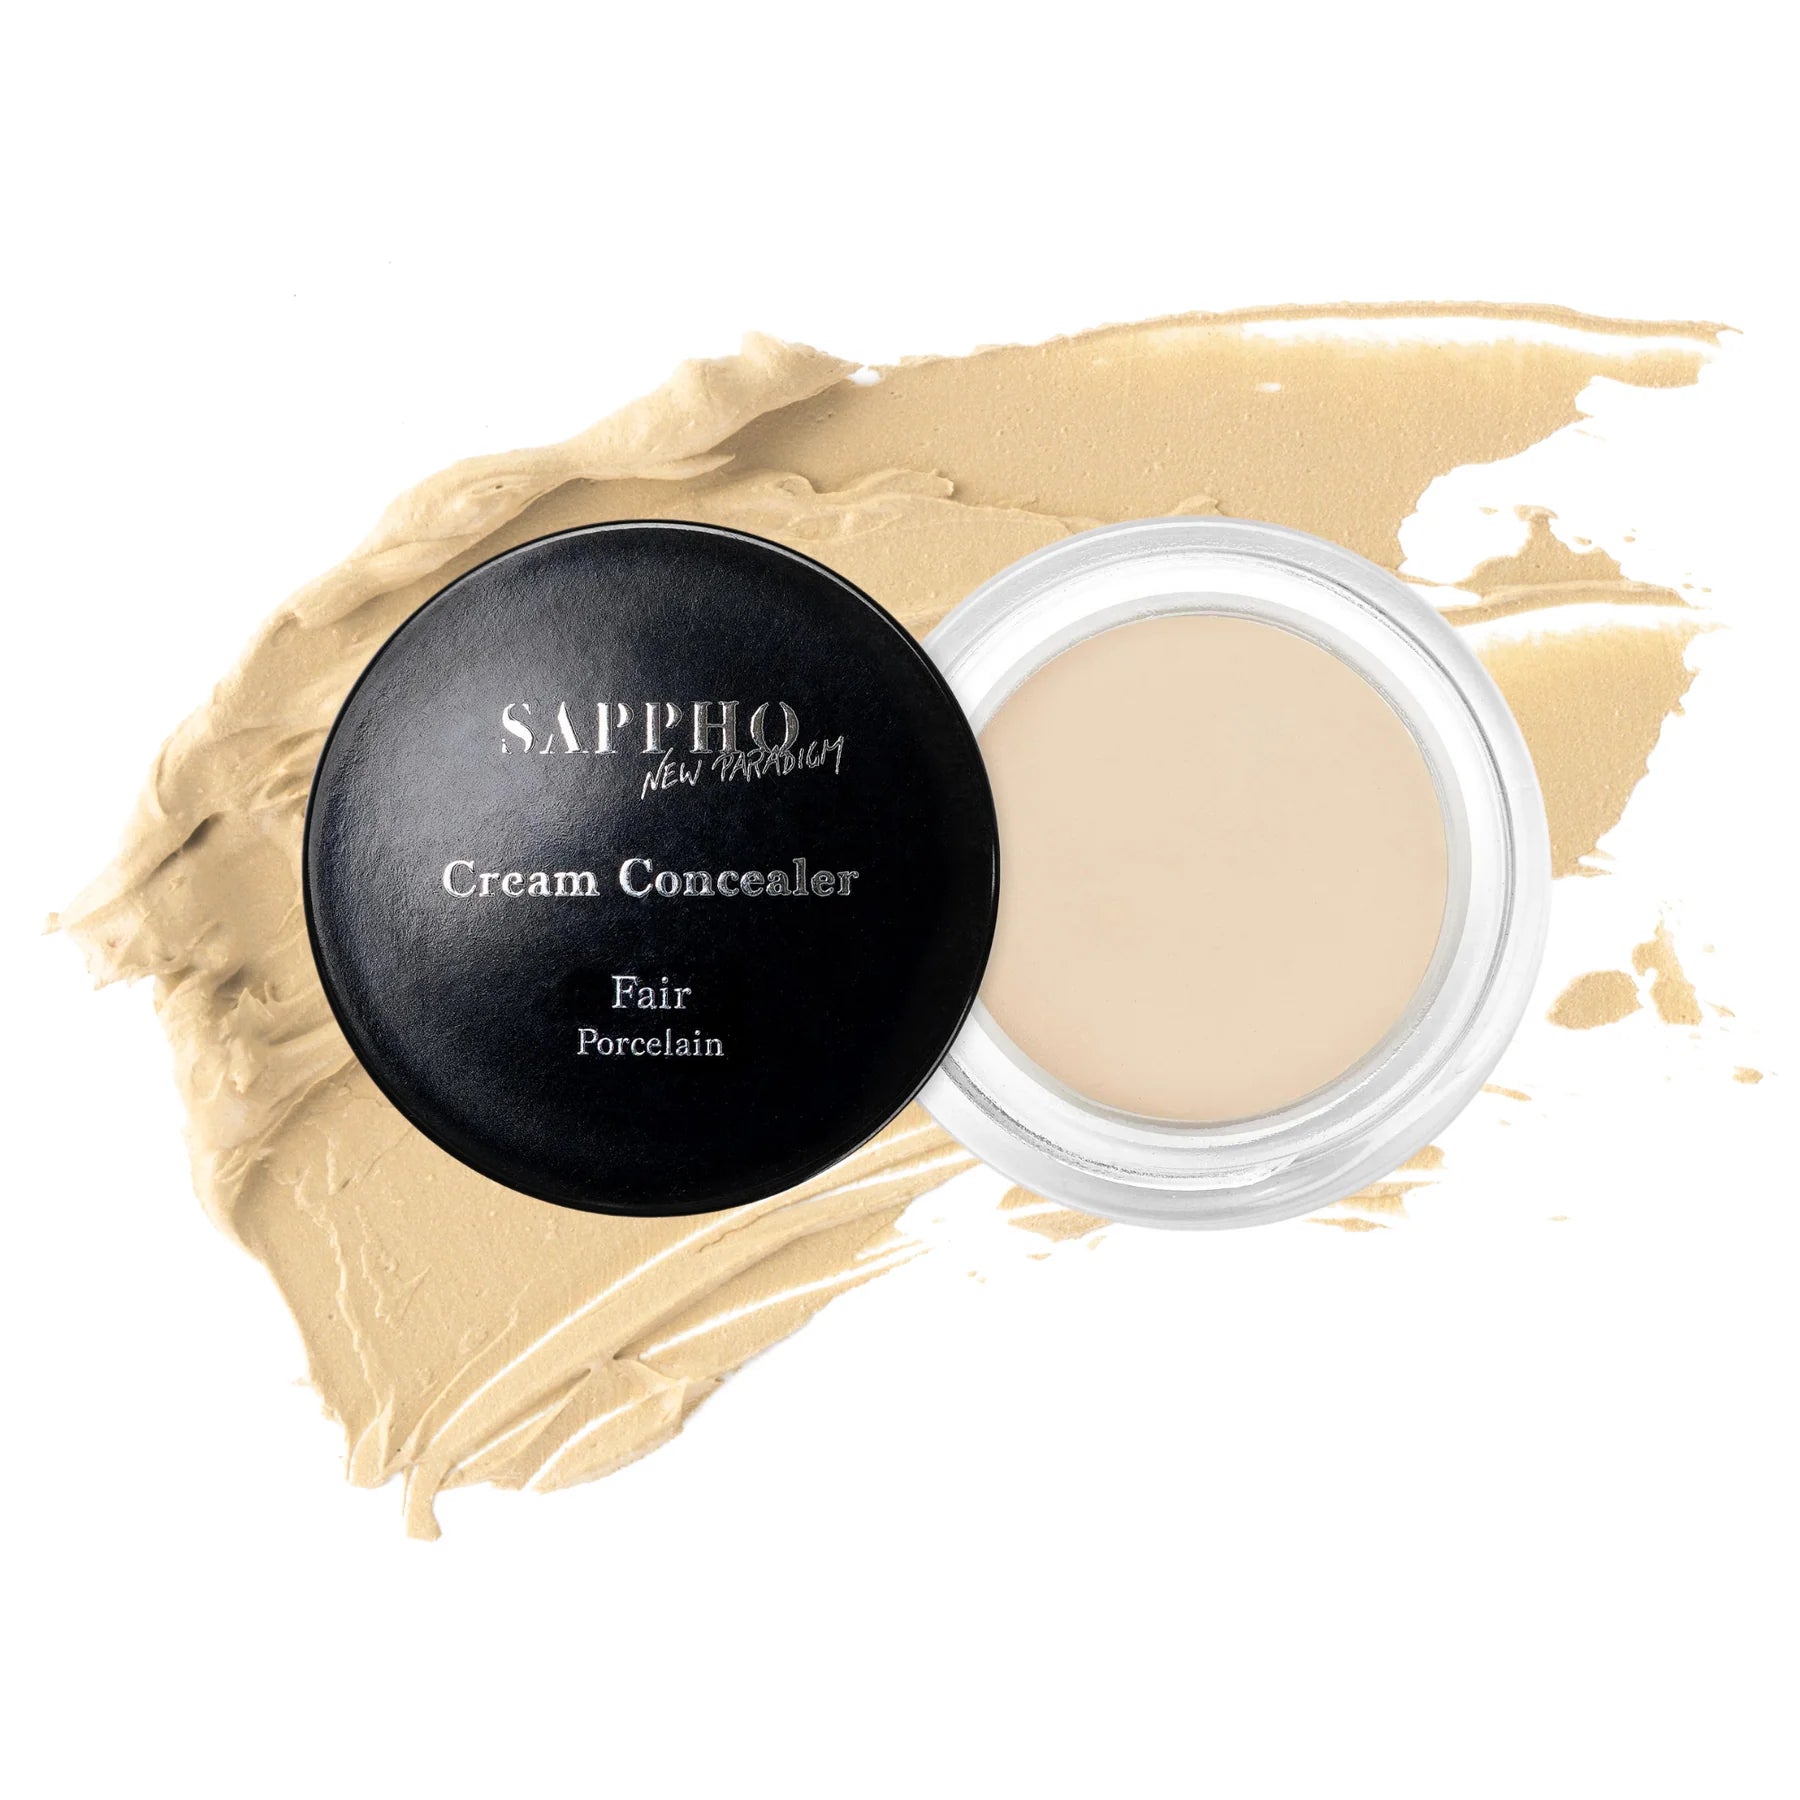 SAPPHO New Paradigm Cream Concealer Fair